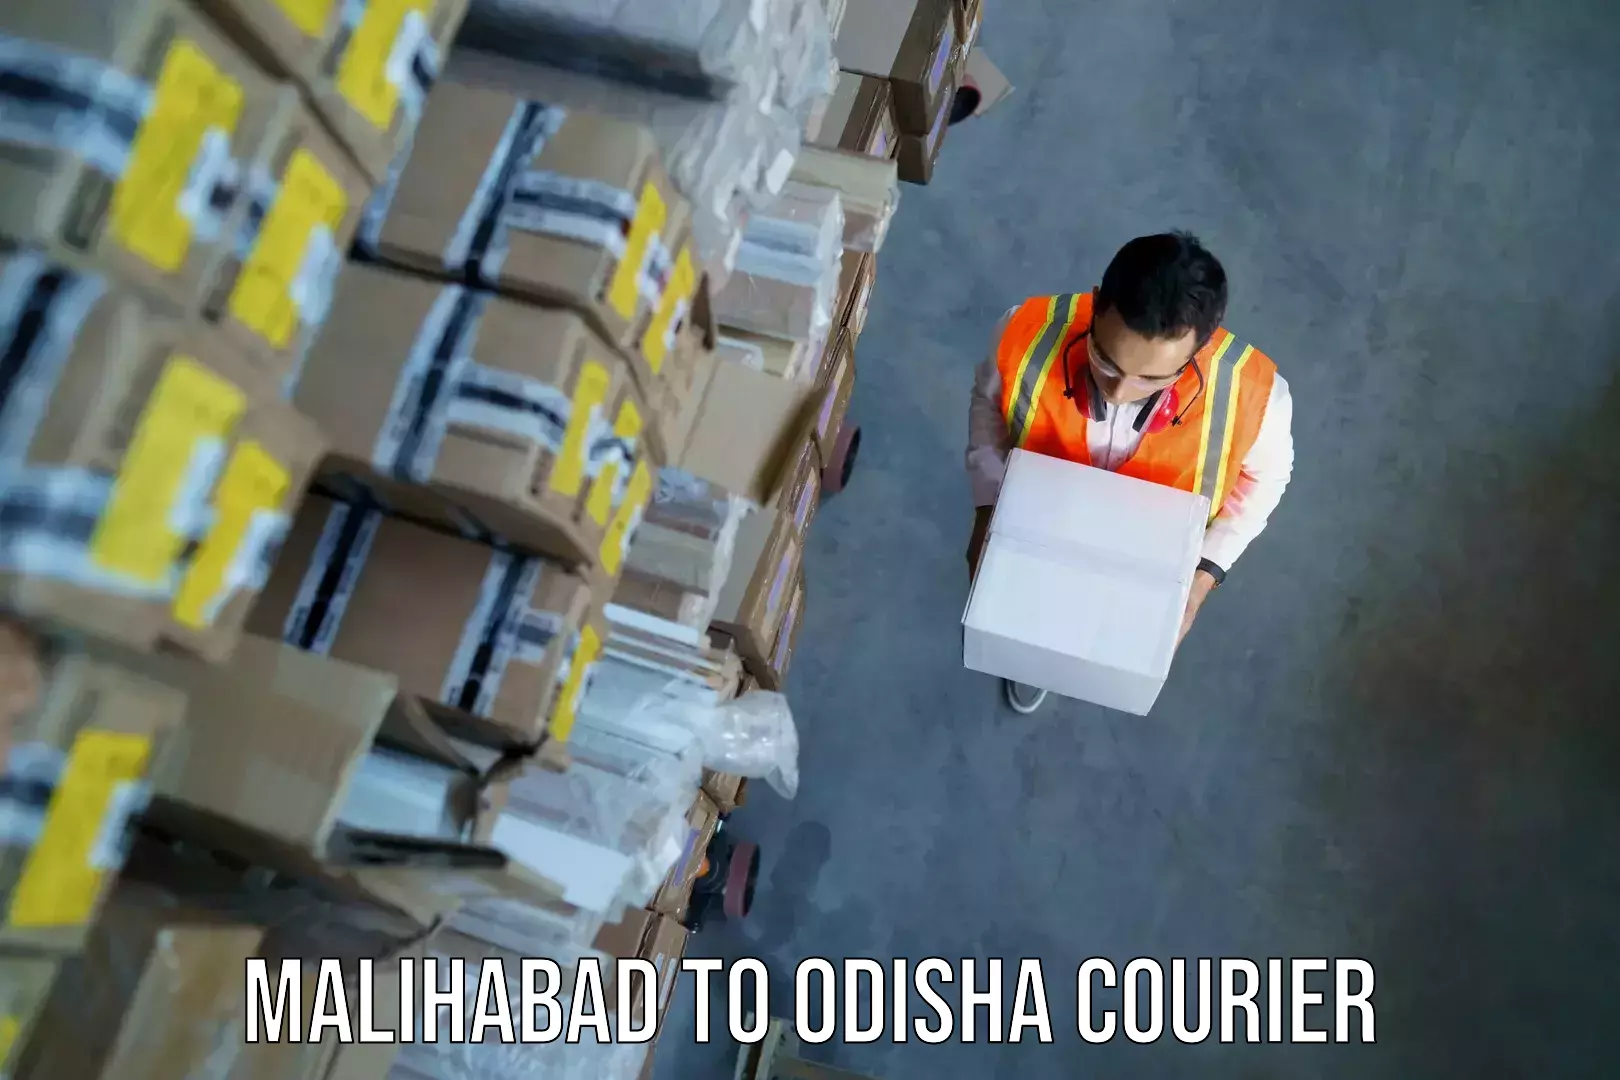 Luggage transport consulting Malihabad to Melchhamunda